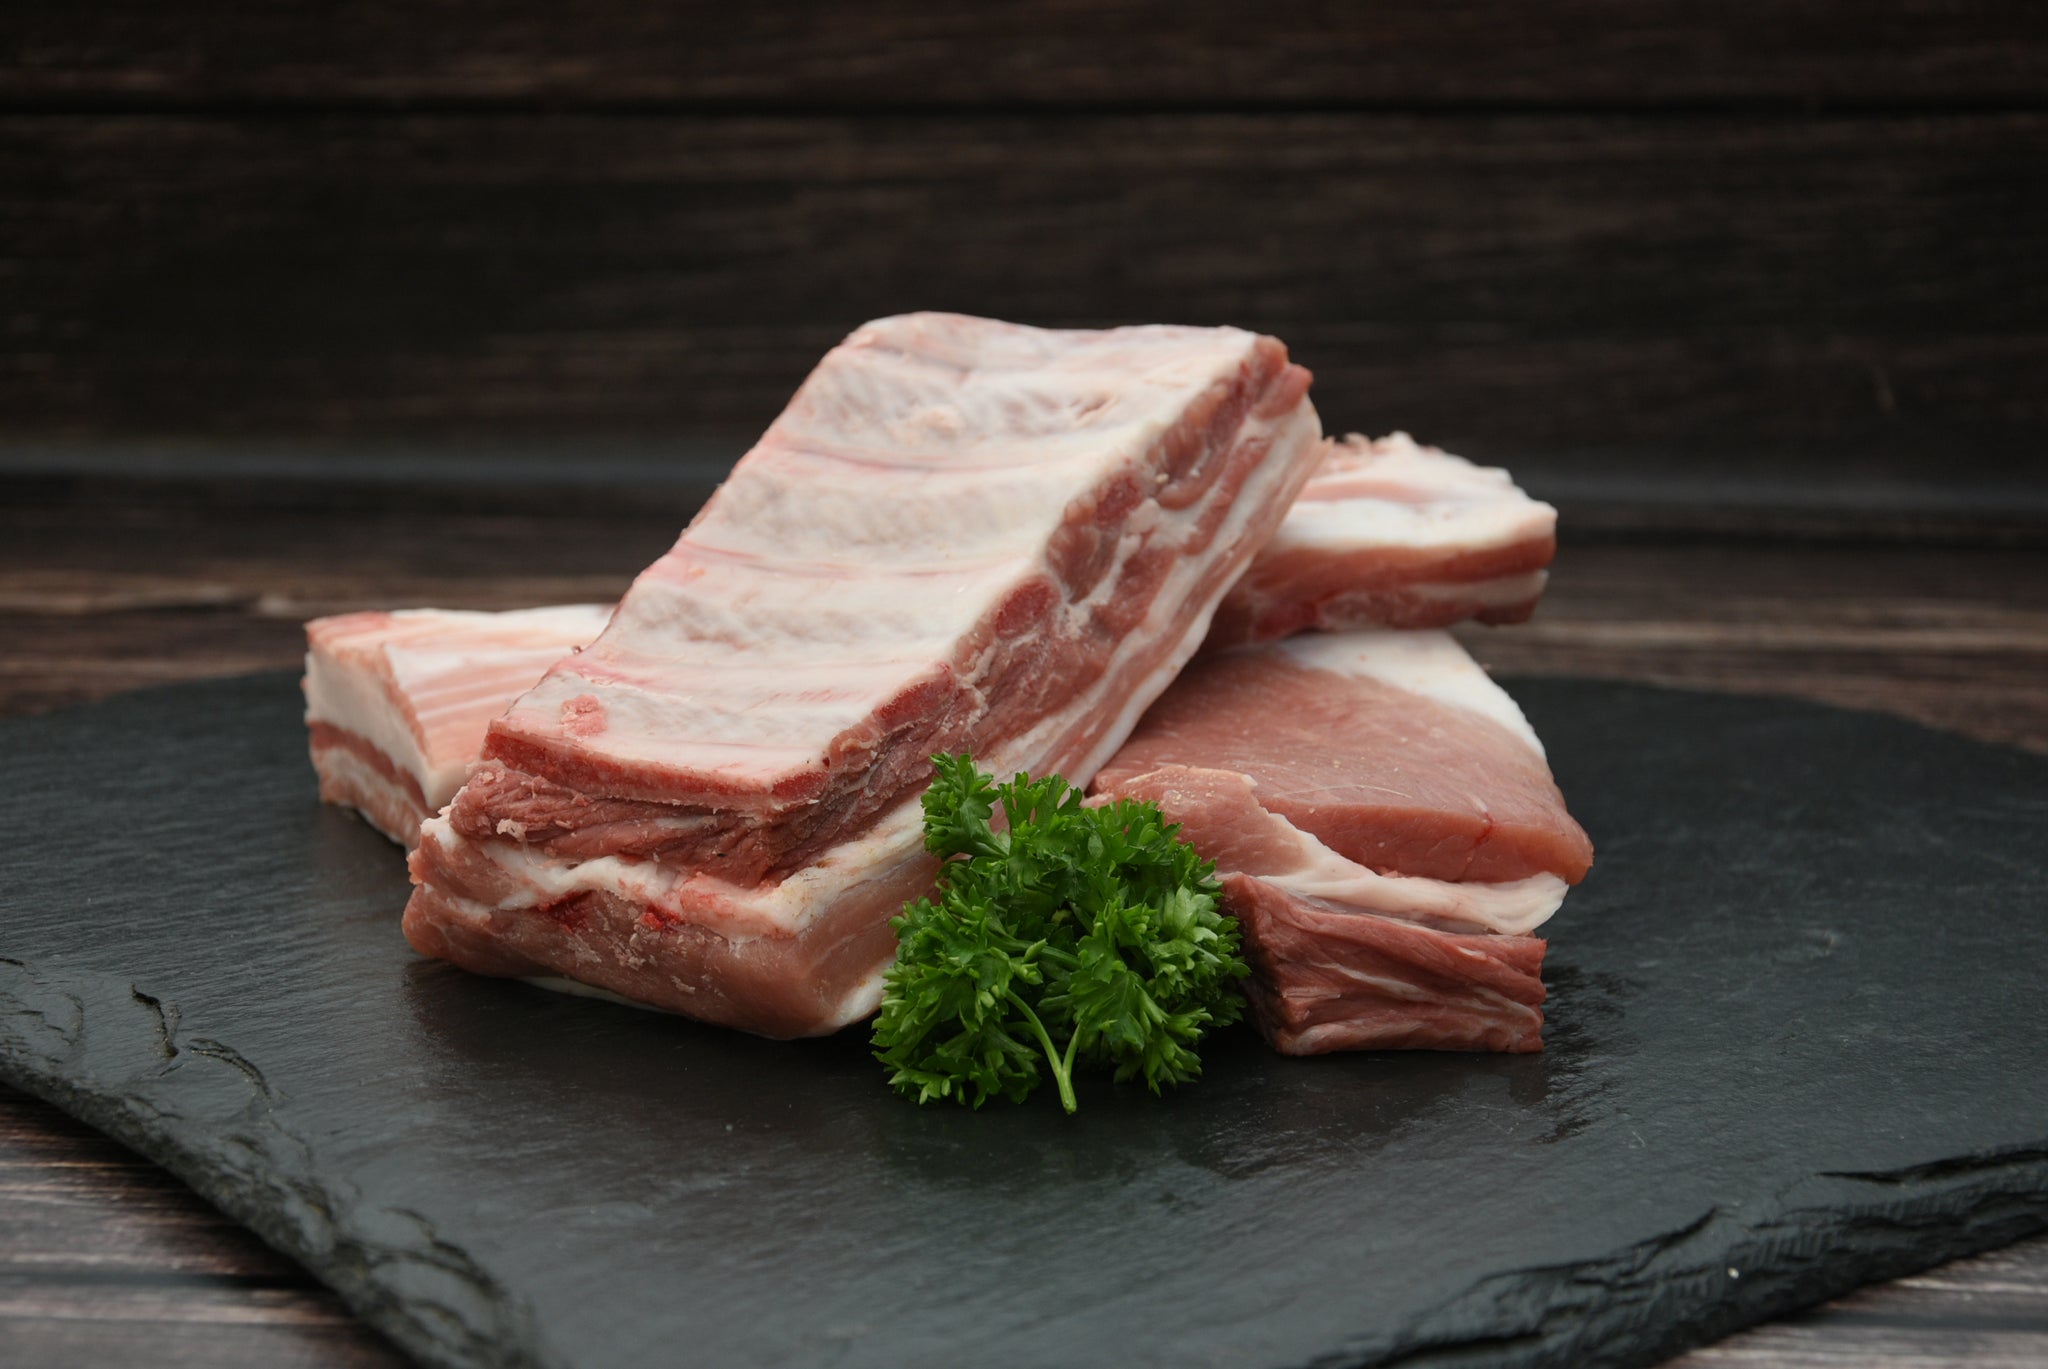 Schweinerippchen, 250g Portion, Preis pro kg 17,90€ - Anzahlung